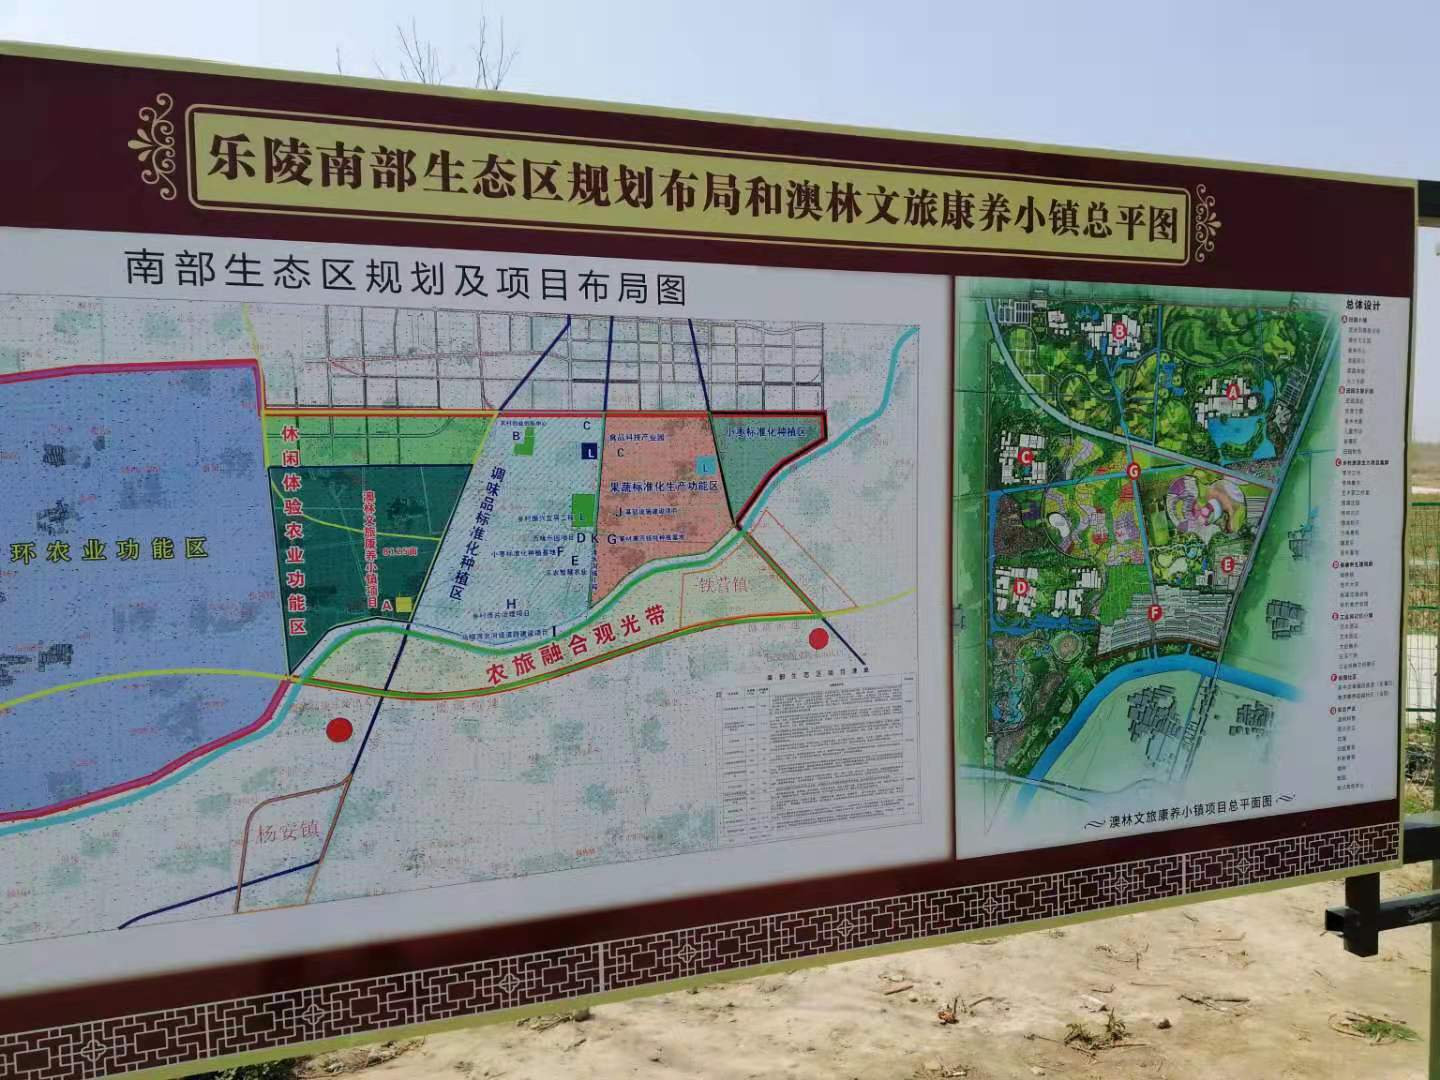 王涛介绍,2021年,乐陵市围绕保障性安居工程,生态文明,社会事业等领域